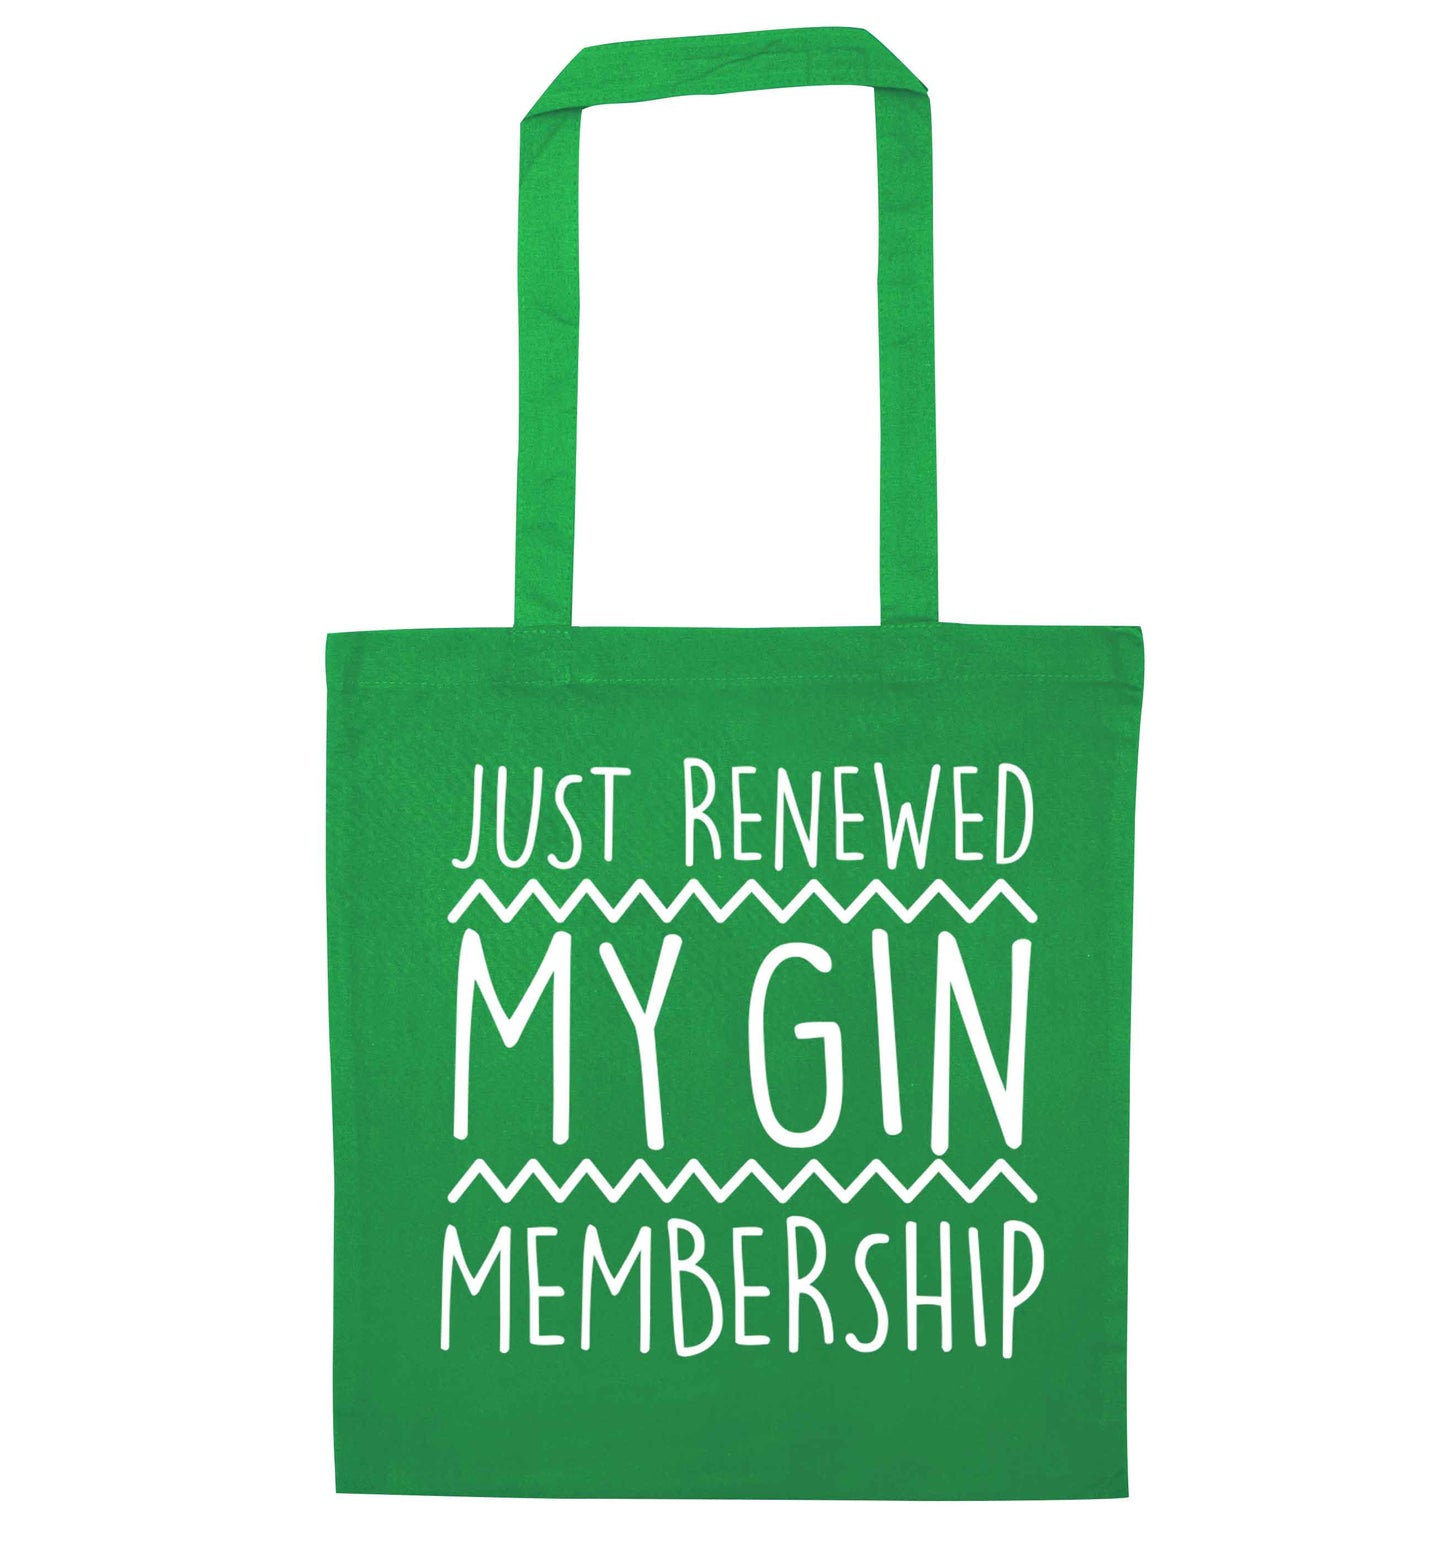 Just renewed my gin membership green tote bag